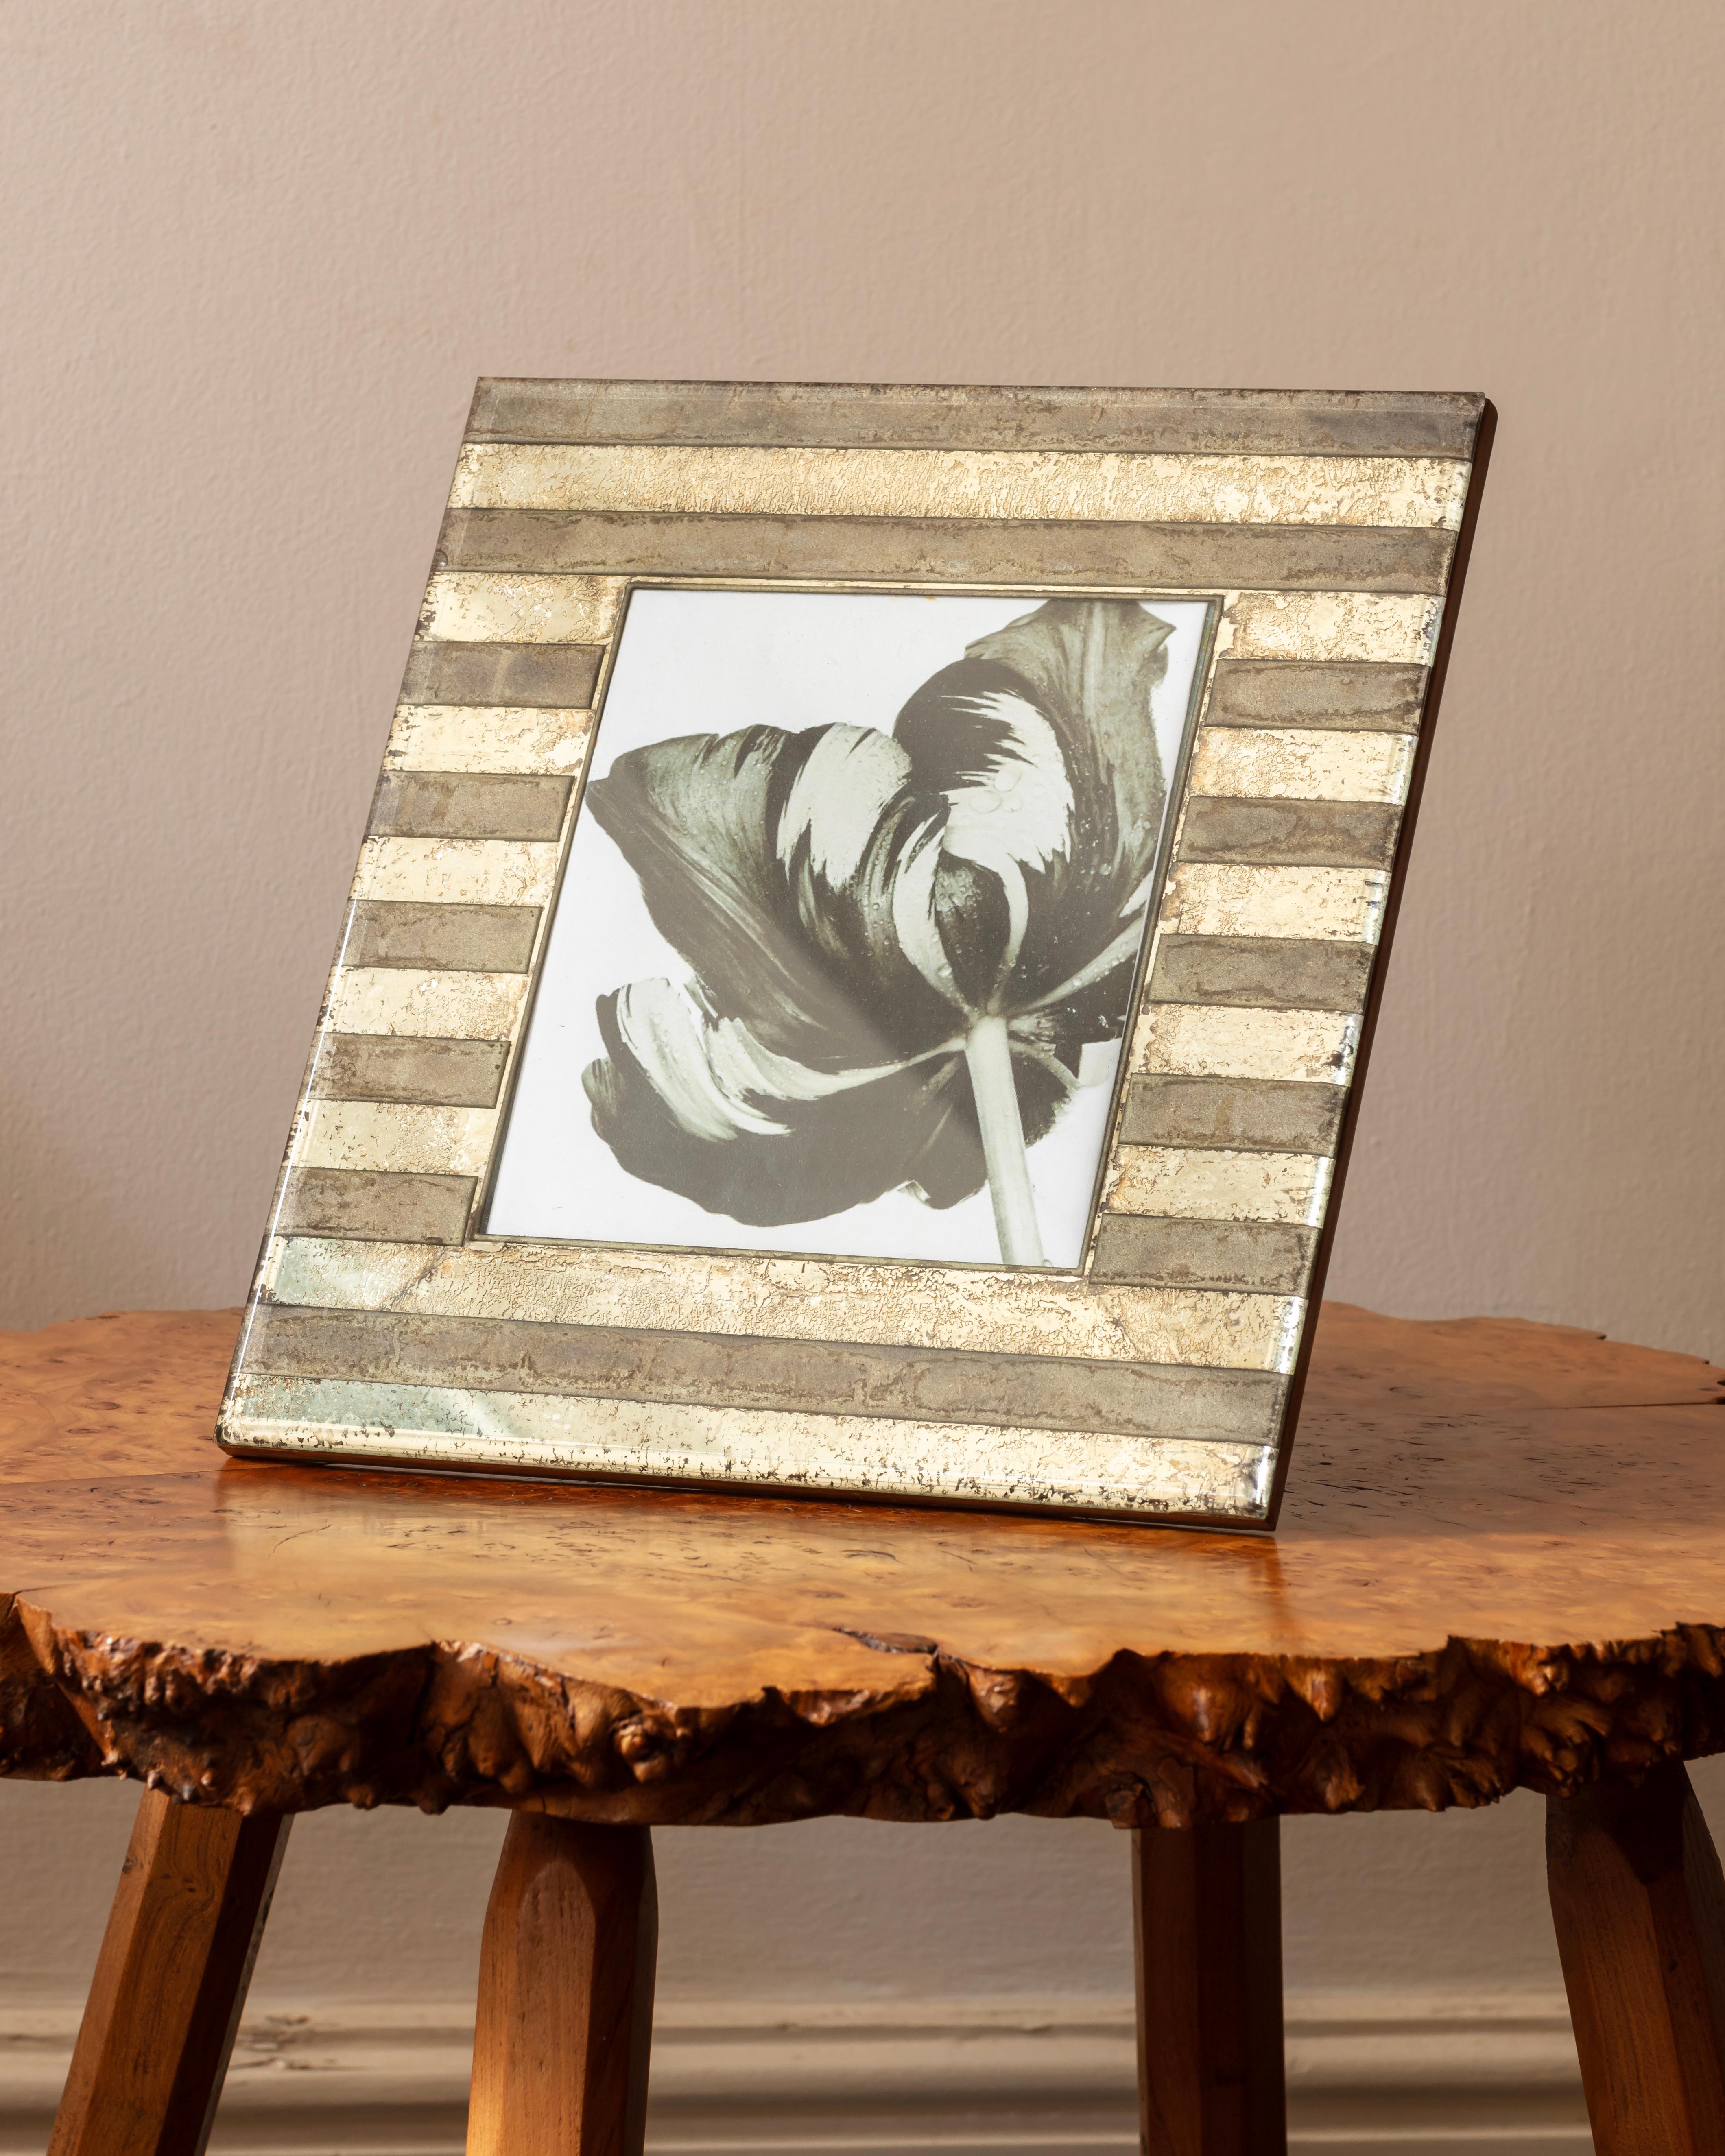 Cadre de photographie, bandes de miroir vieilli montées sur sycomore.
Italien des années 1940 
Dimensions : H:29cm x L:31cm